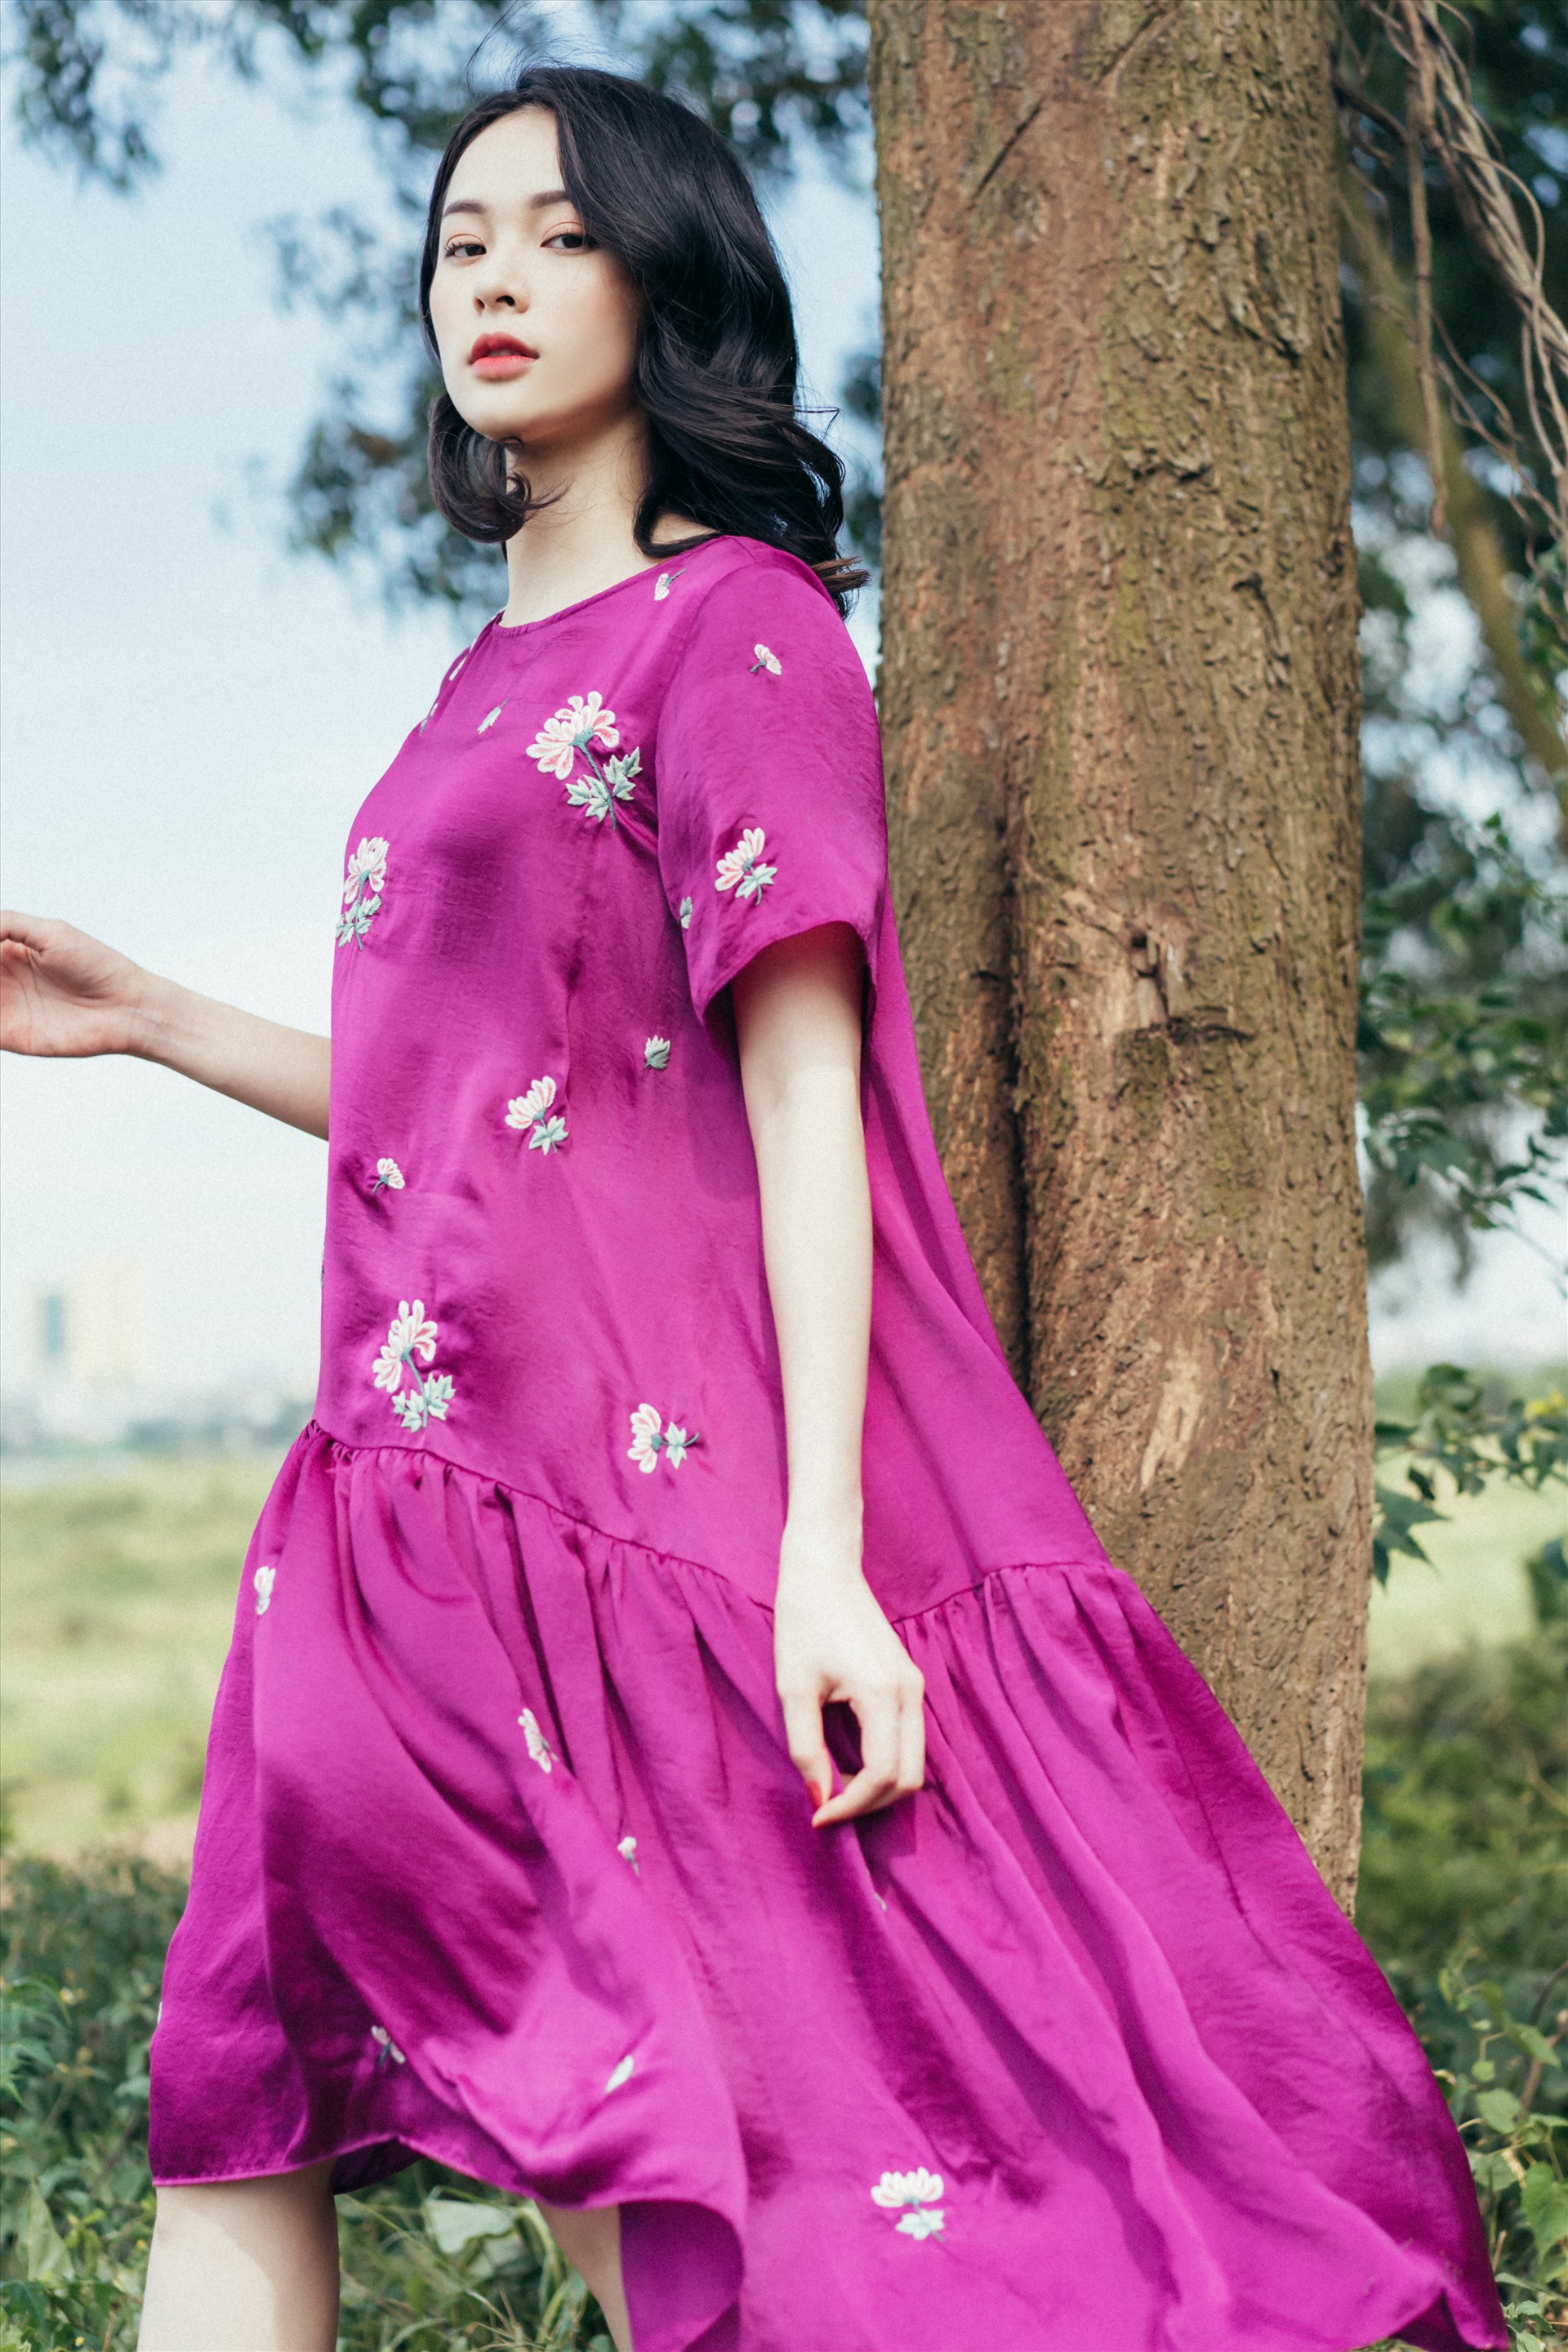 Trong bộ ảnh thời trang mới nhất vừa thực hiện tại Hà Nội, nữ diễn viên phim “Tấm Cám: Chuyện chưa kể” khoe vẻ đẹp mong manh. Ảnh: Tuanti.